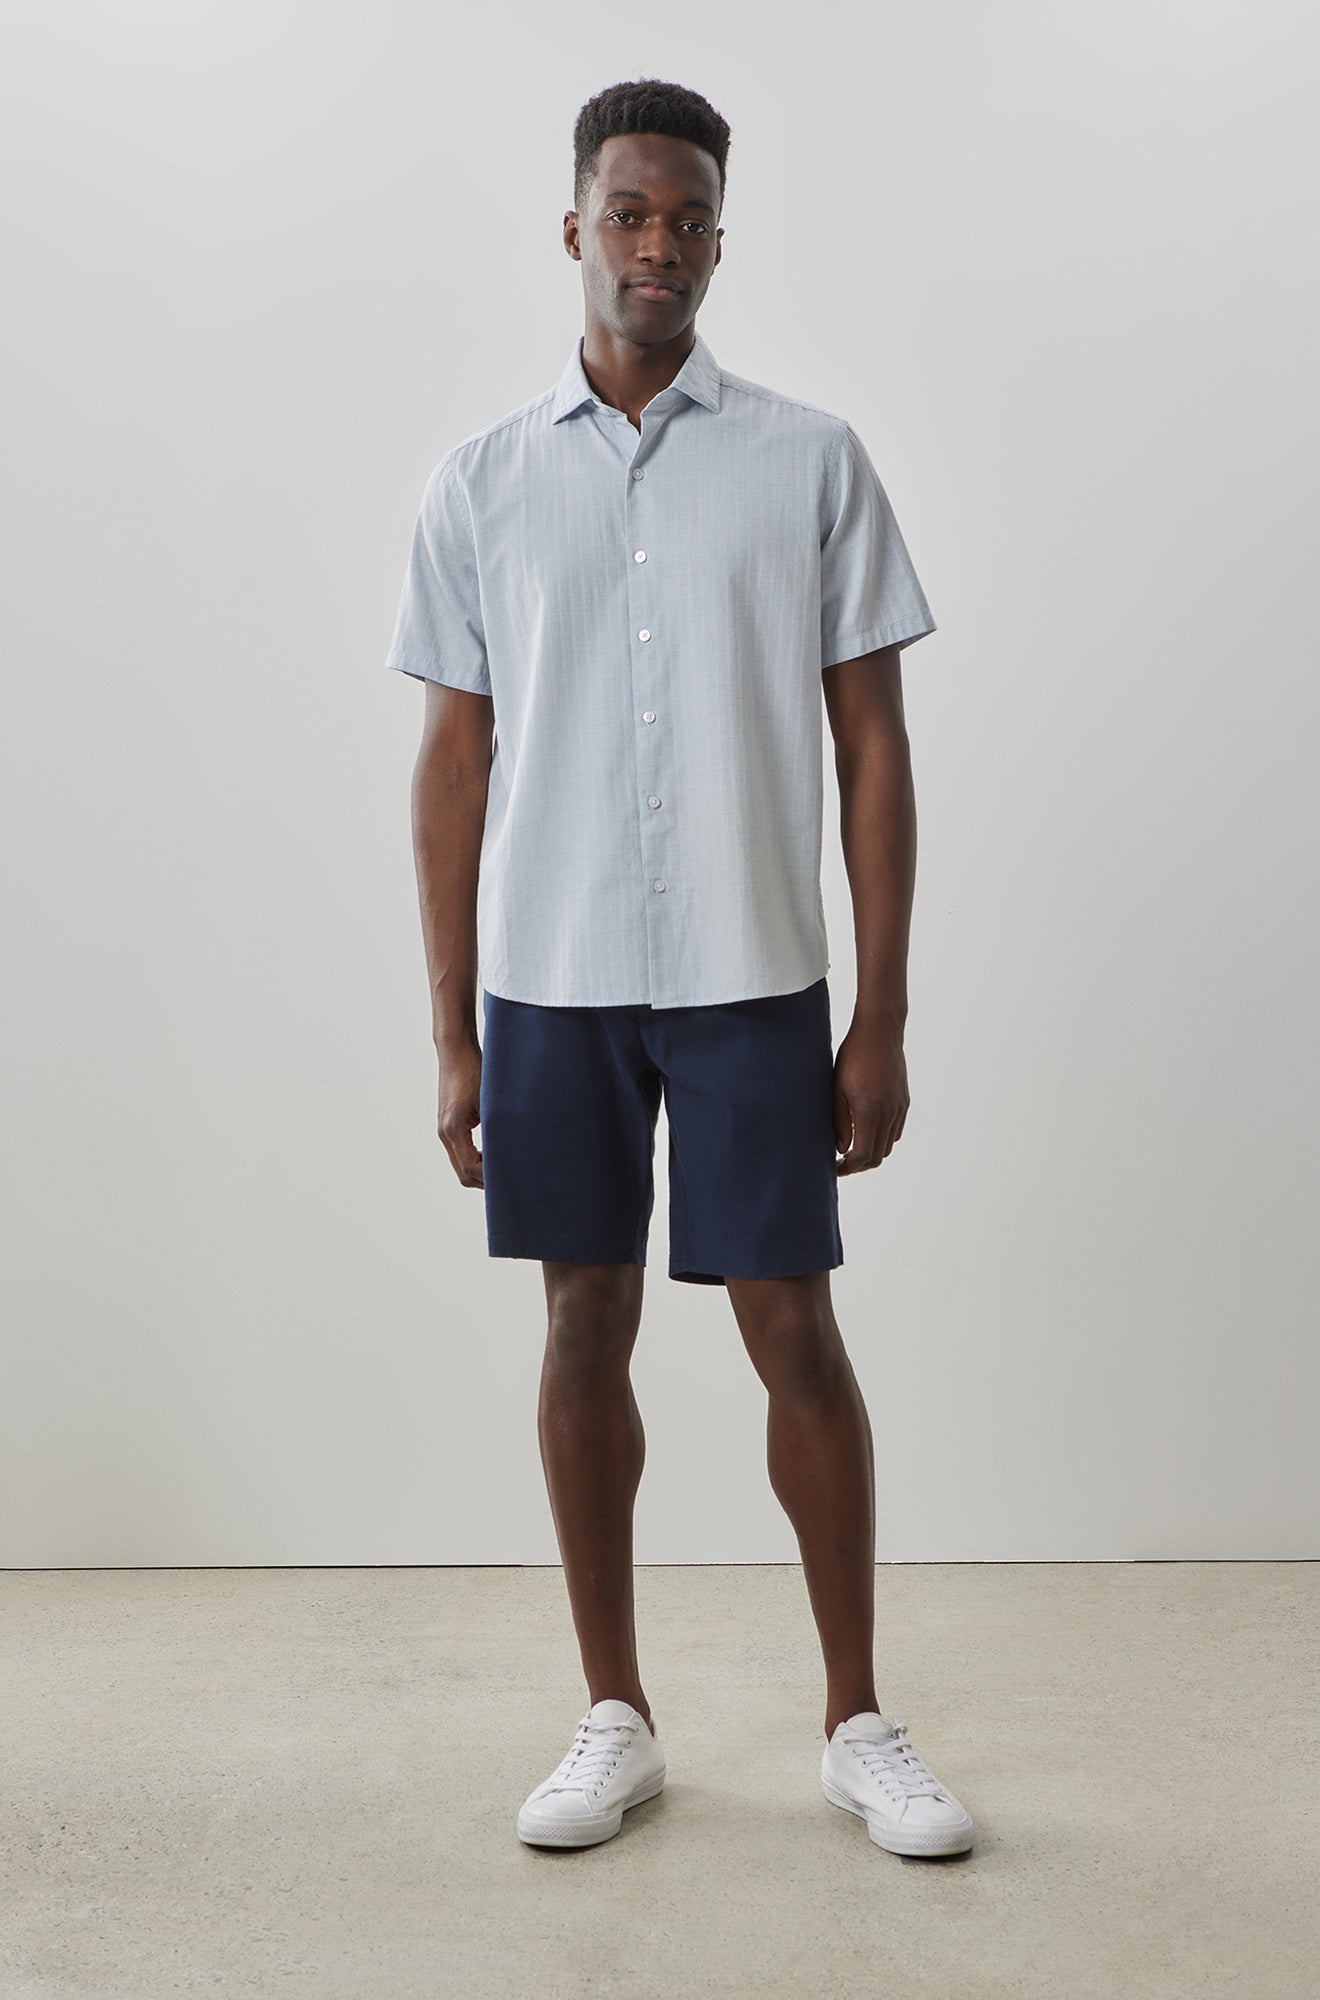 Chemise manches courtes pour homme par Robert Barakett | Silvera RB41151 BLUE | Machemise.ca, vêtements mode pour hommes